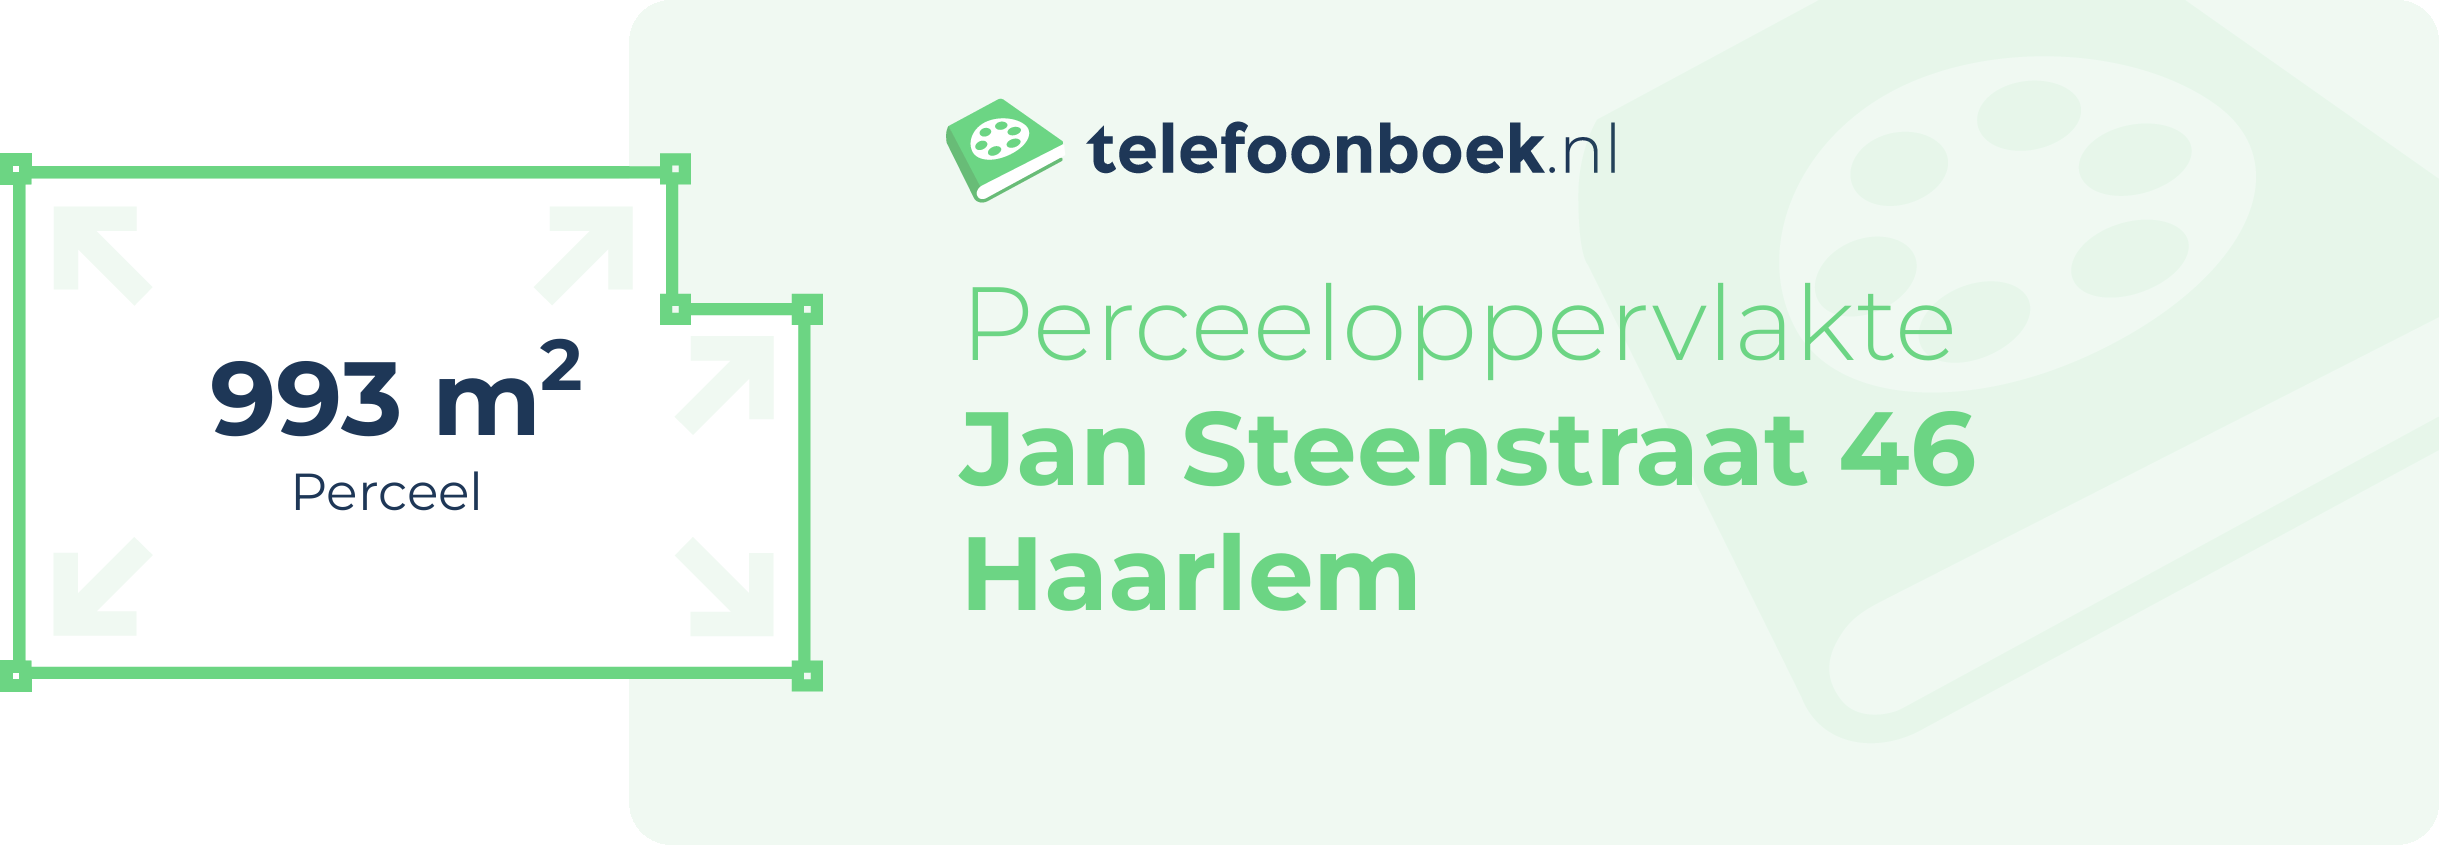 Perceeloppervlakte Jan Steenstraat 46 Haarlem